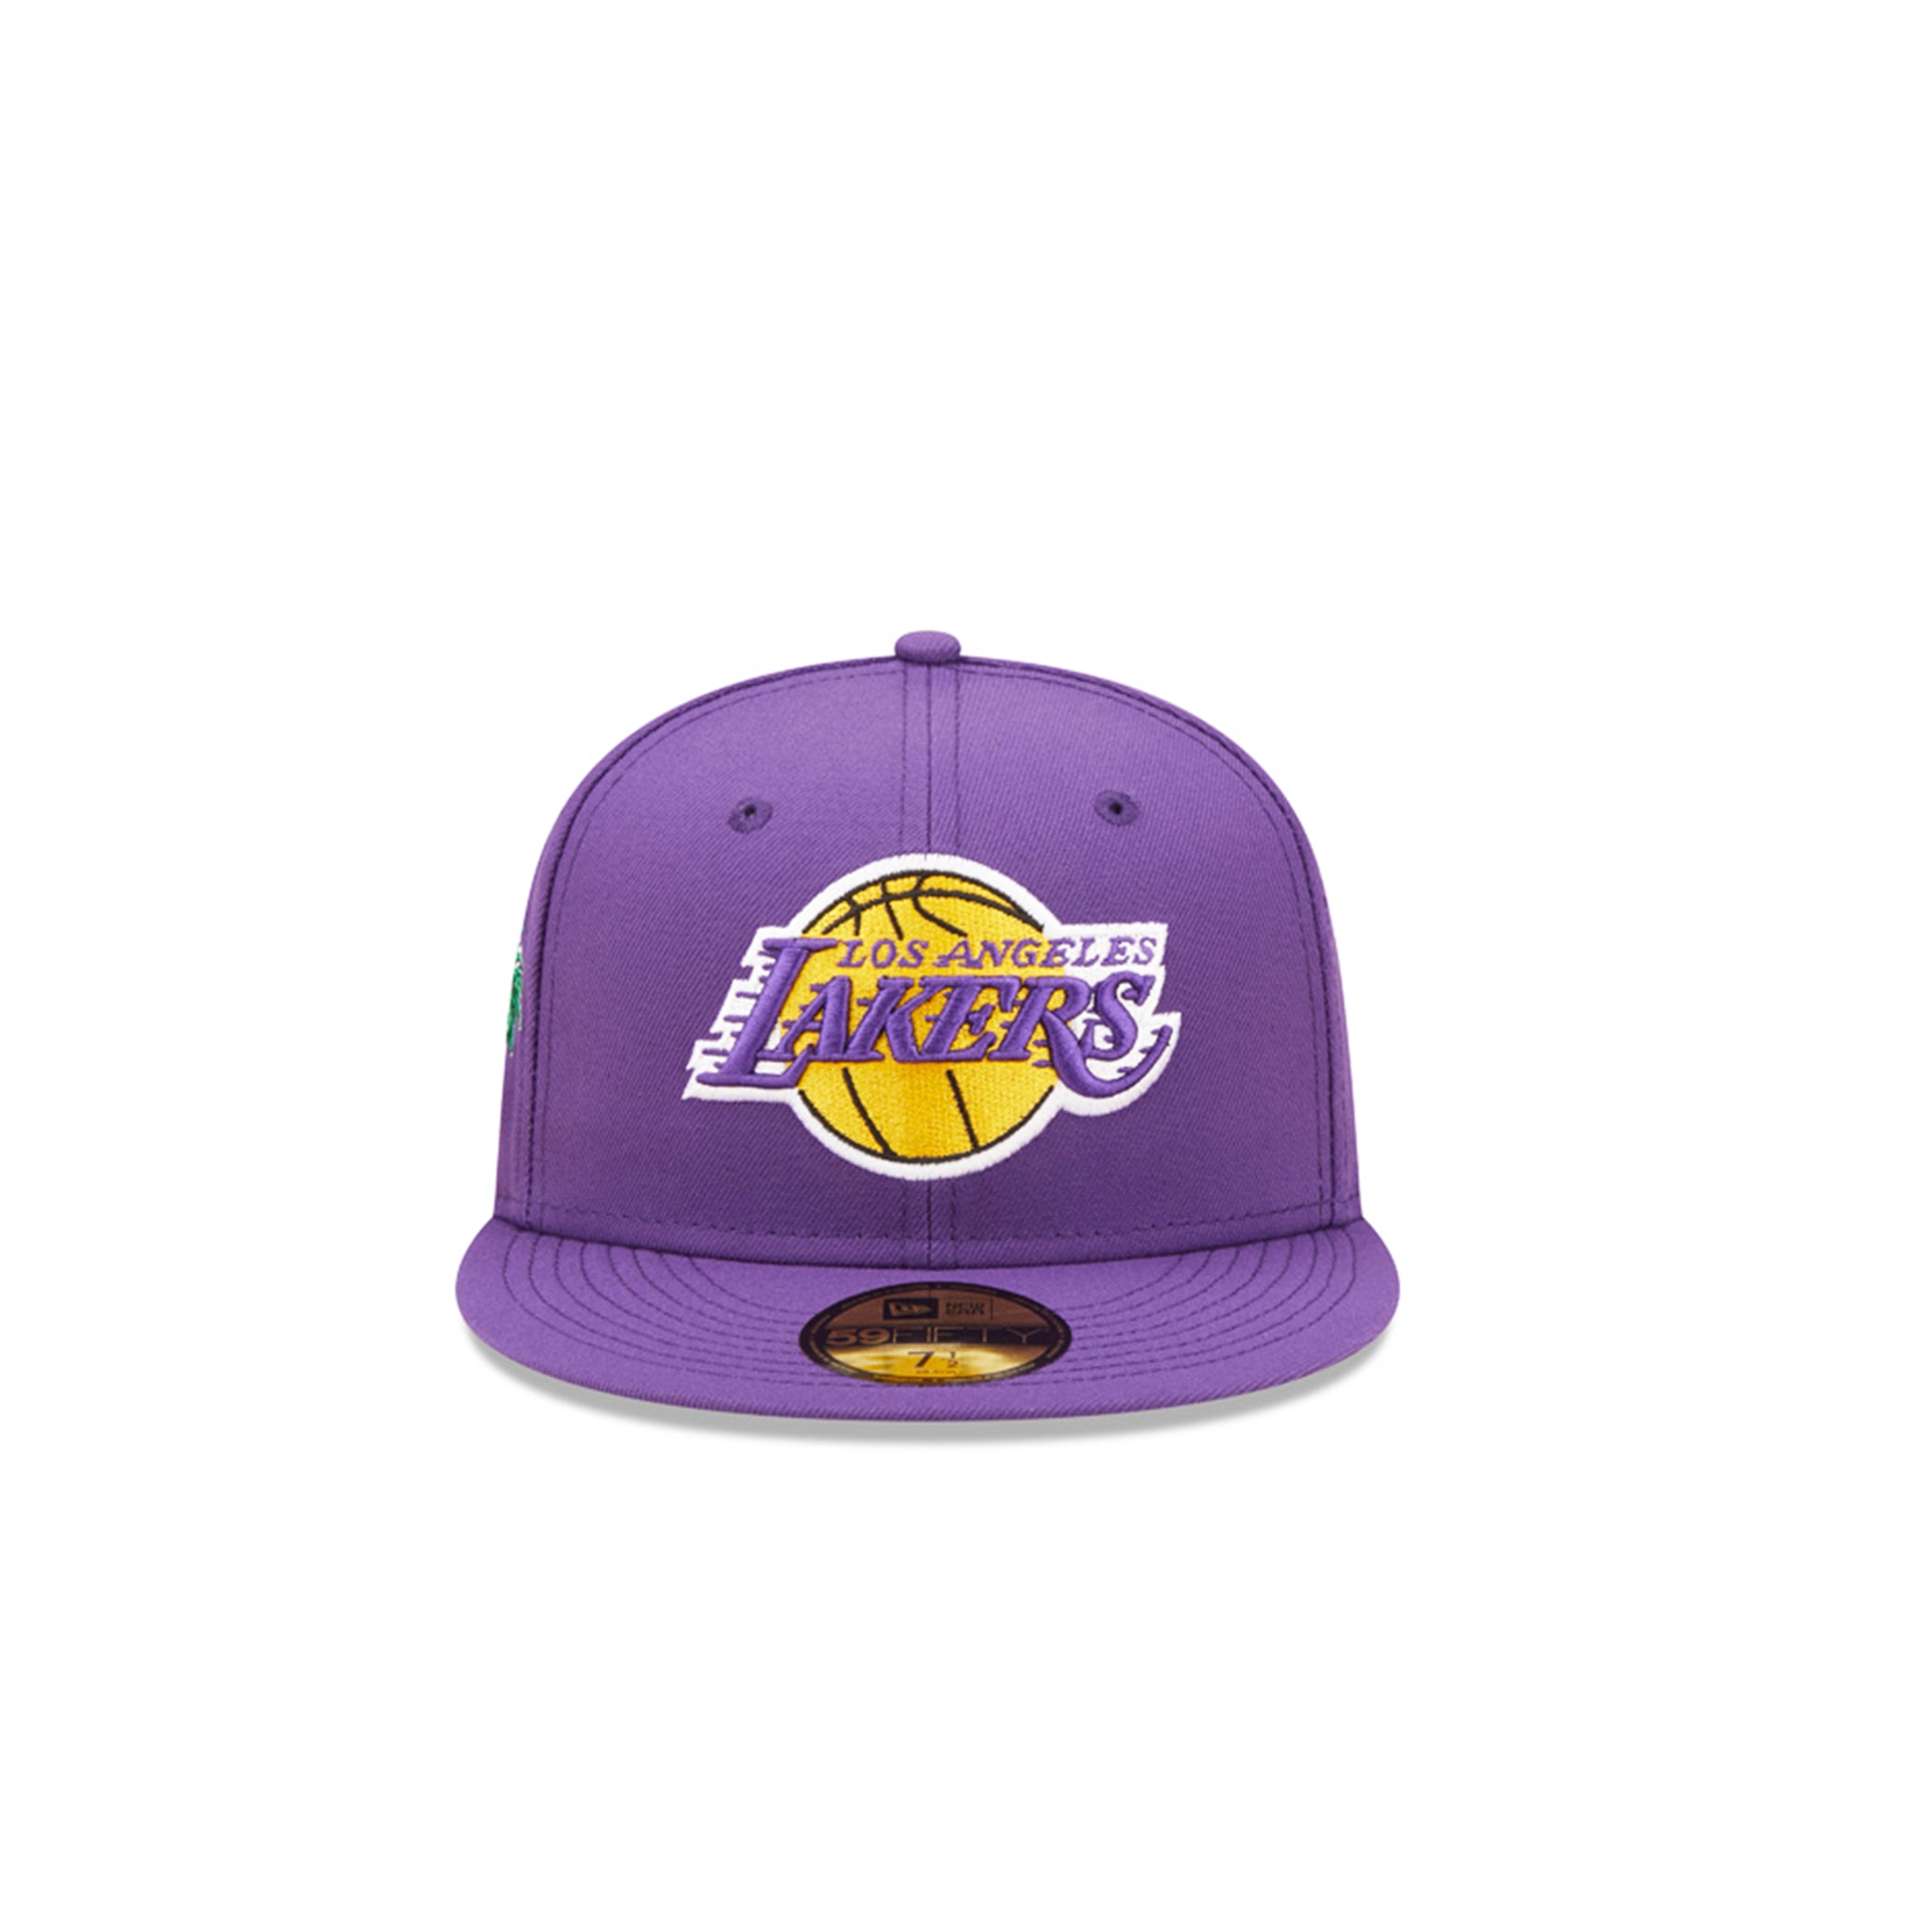 LA Lakers New Era Team Print 950 Snapback Purple - The Locker Room